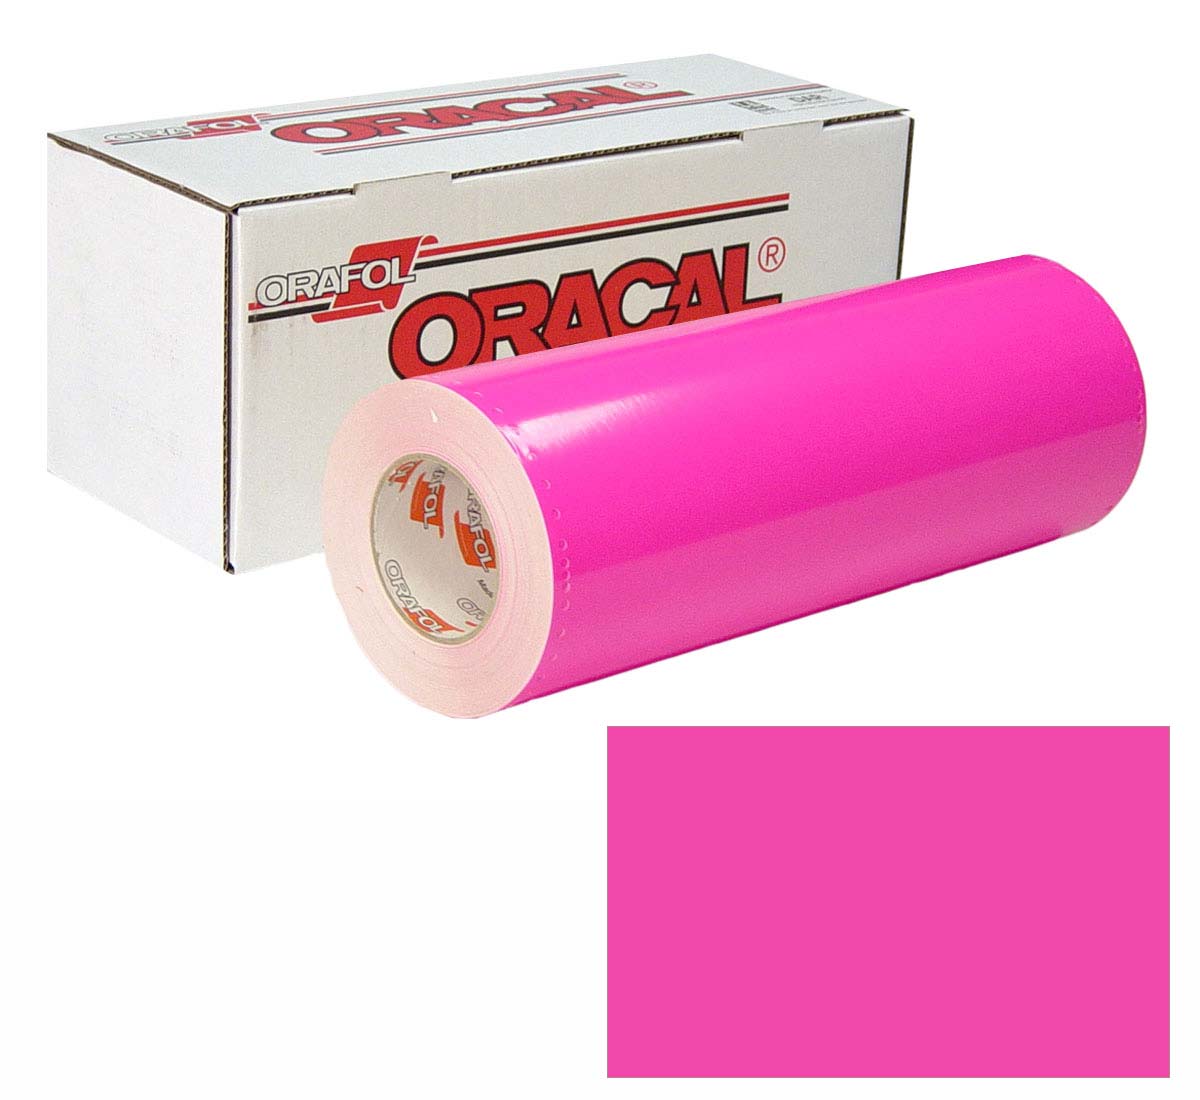 ORACAL 7510 Fluor Unp 24in X 50yd 046 Pink